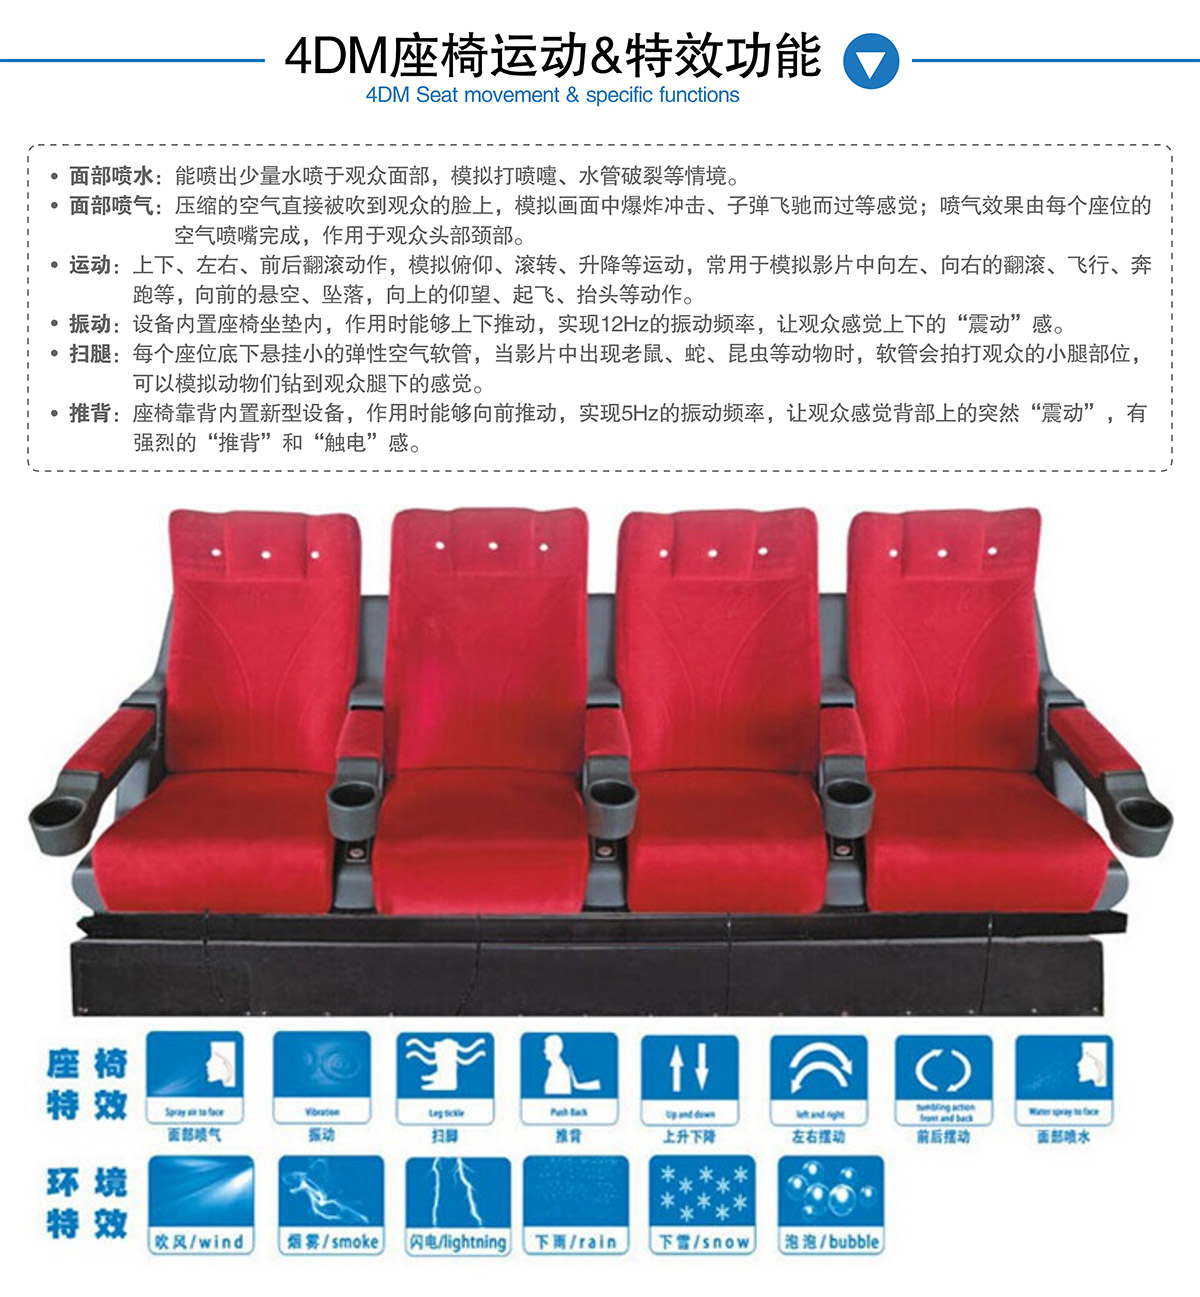 重庆4DM座椅运动和特效功能.jpg